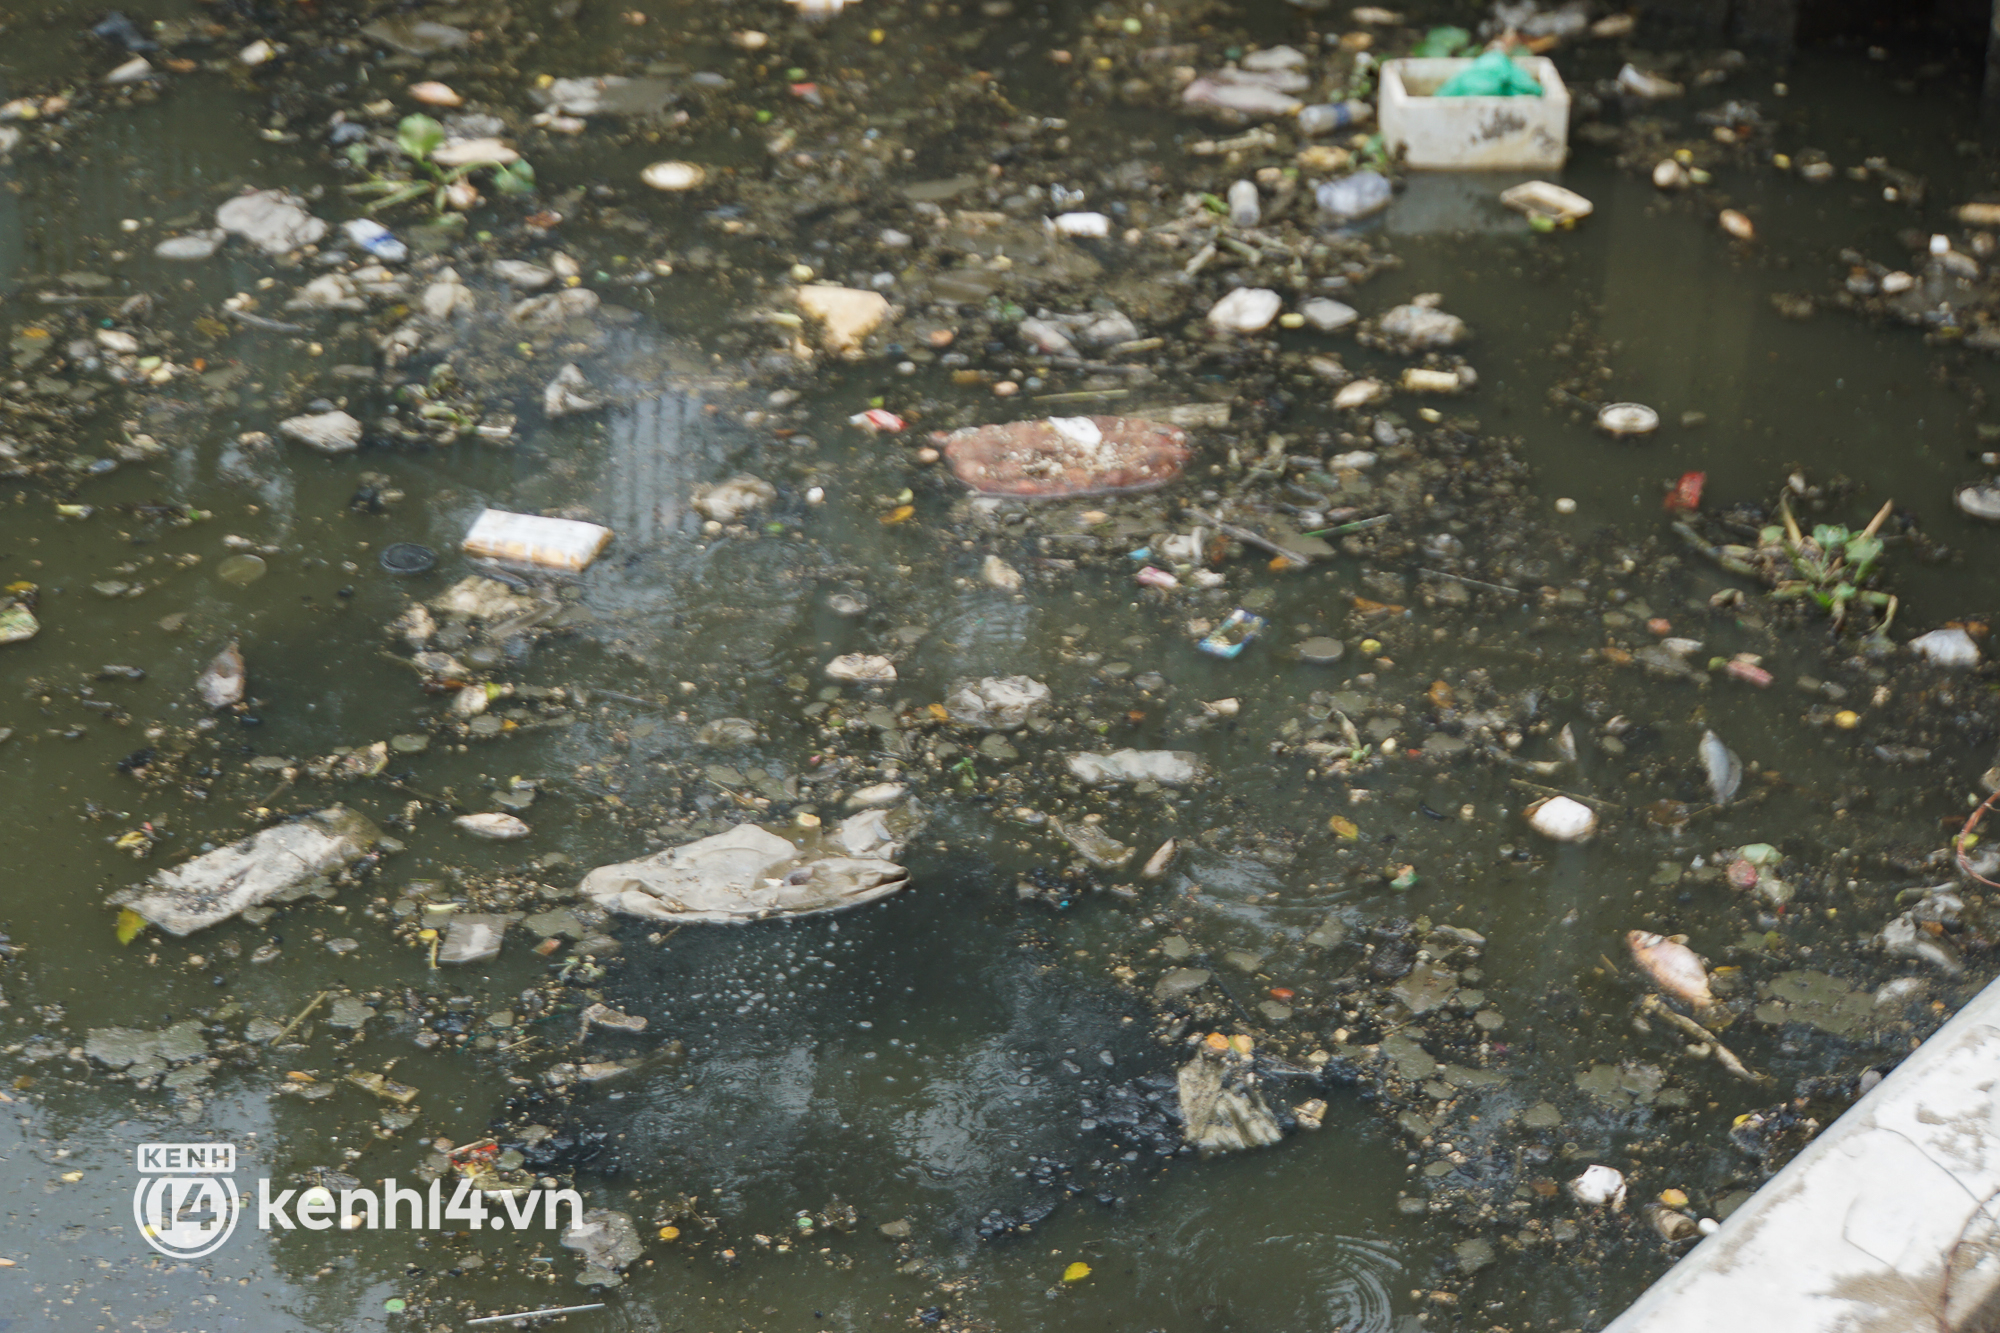 Cá chết lẫn trong rác thải nổi kín mặt kênh Nhiêu Lộc - Thị Nghè ở TP.HCM  - Ảnh 8.